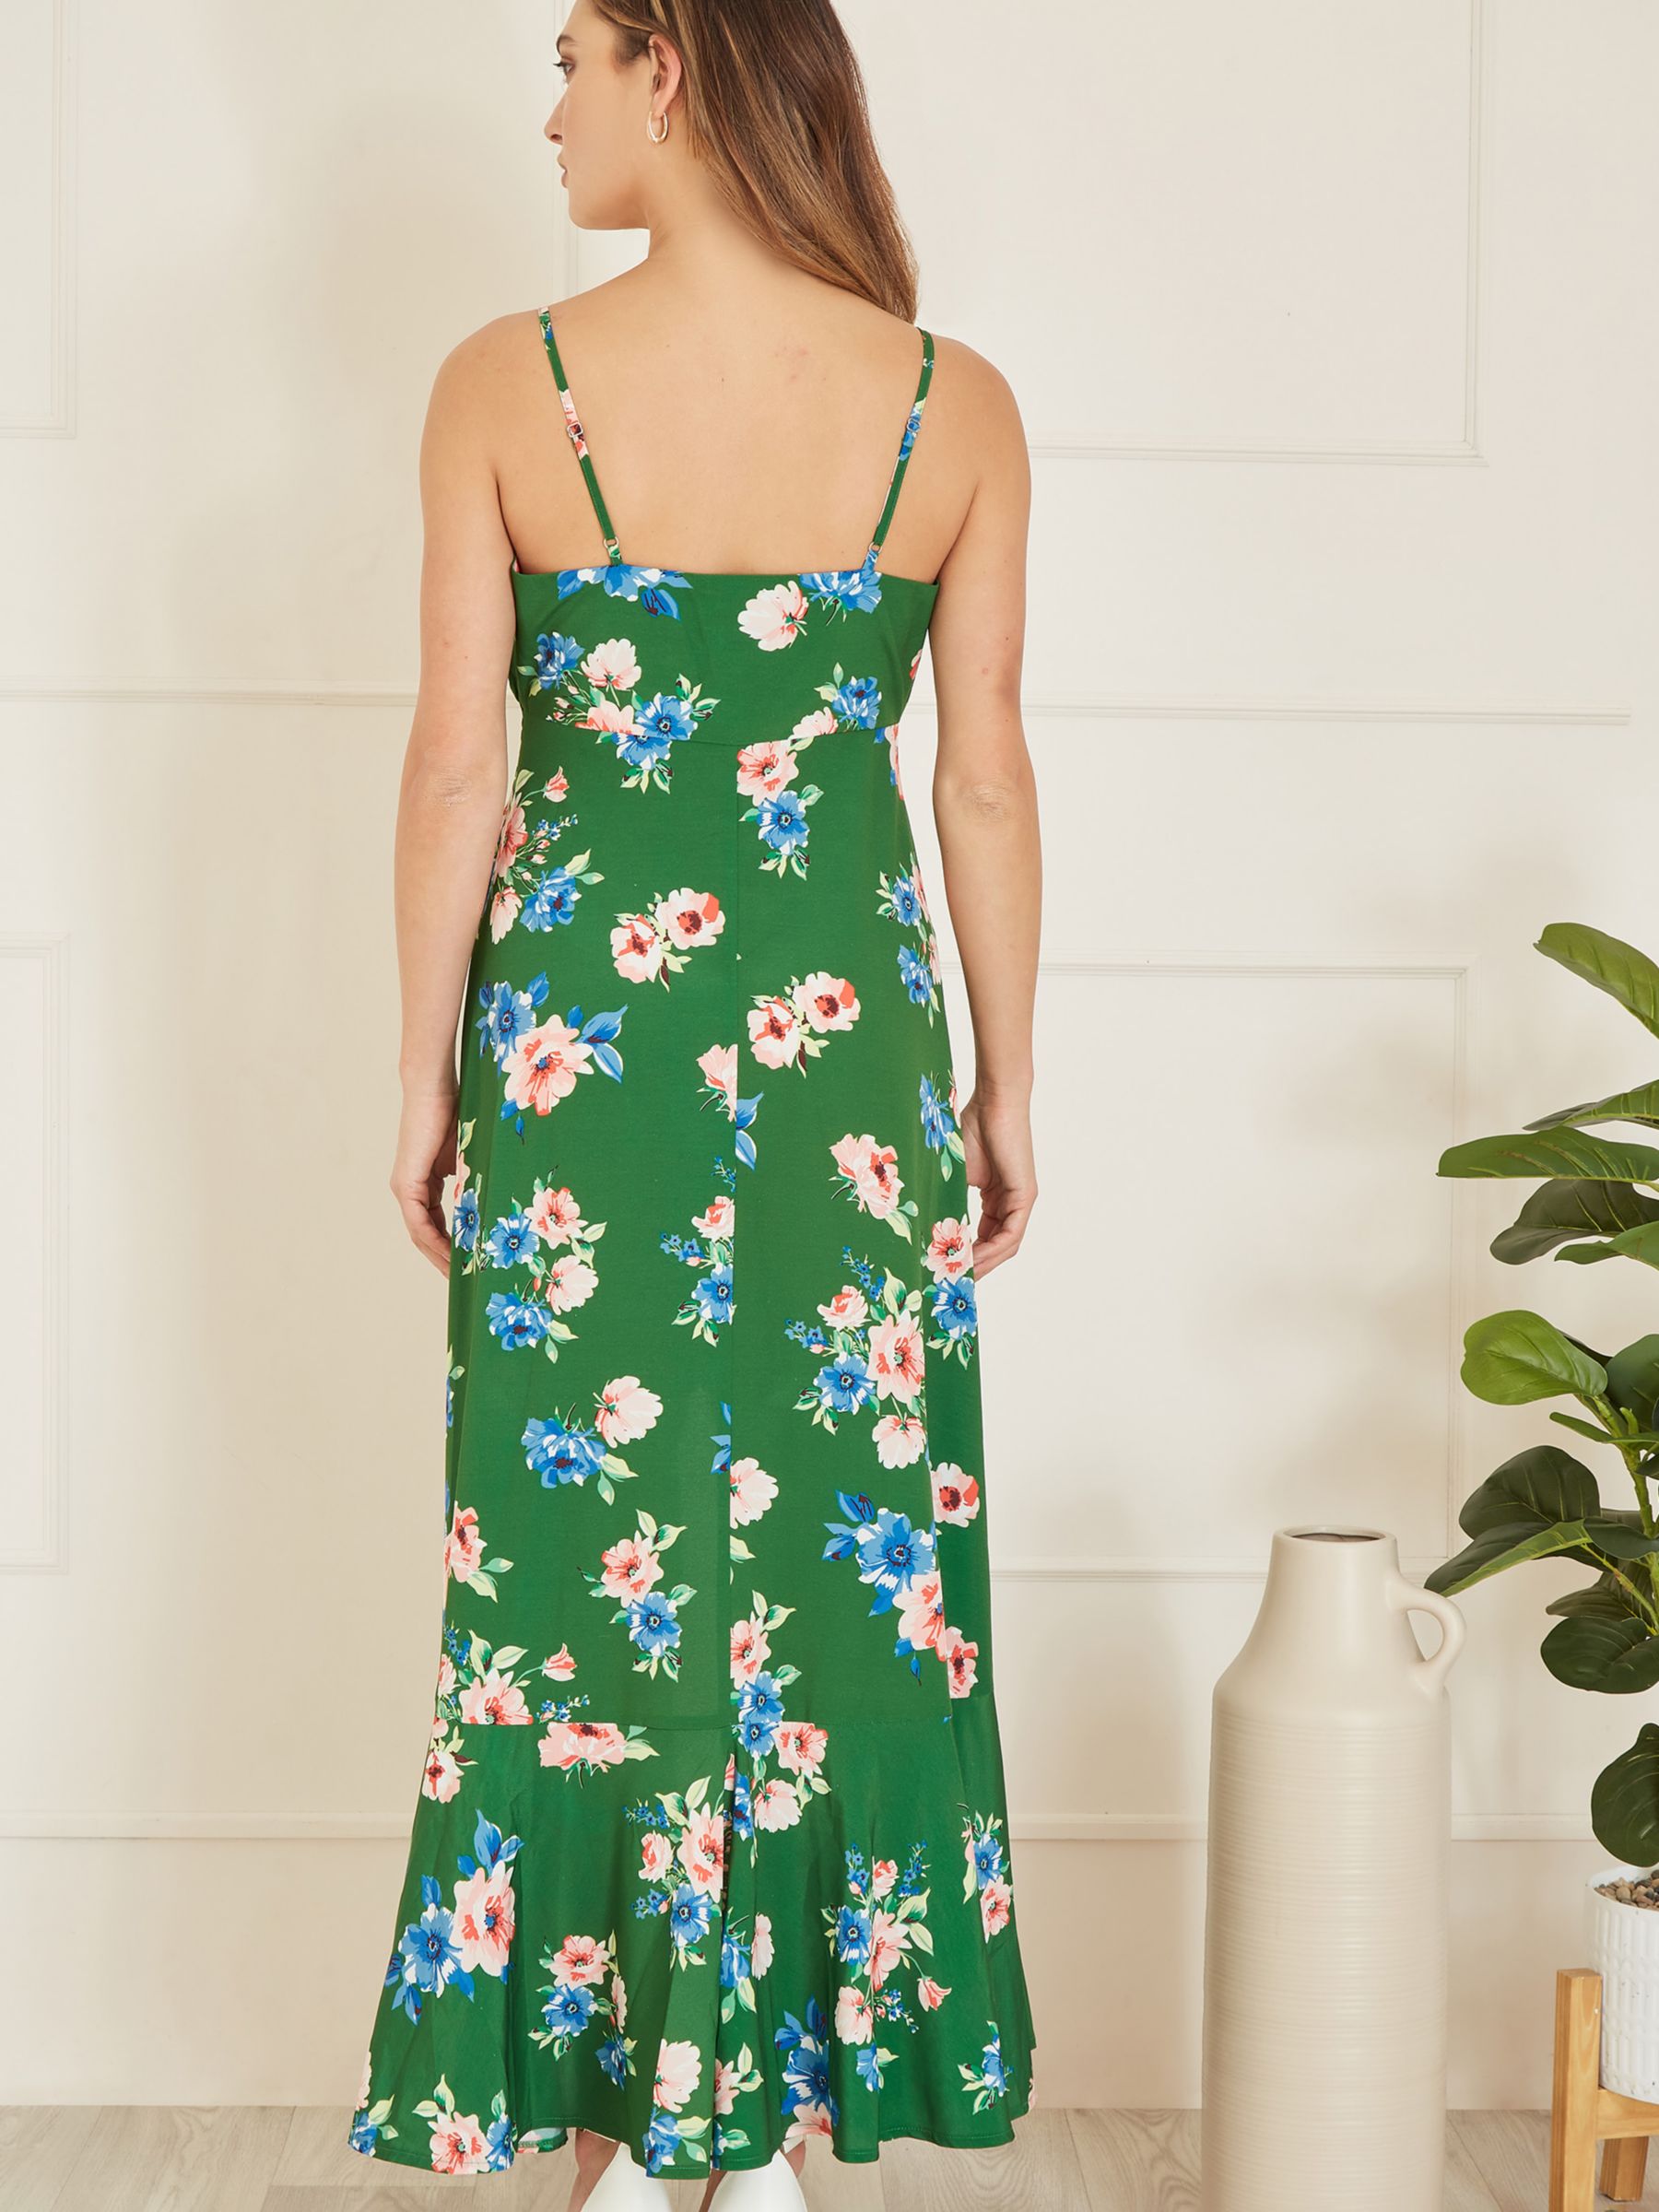 Yumi Floral Print High Low Frill Hem Midi Dress, Green/Multi, 8